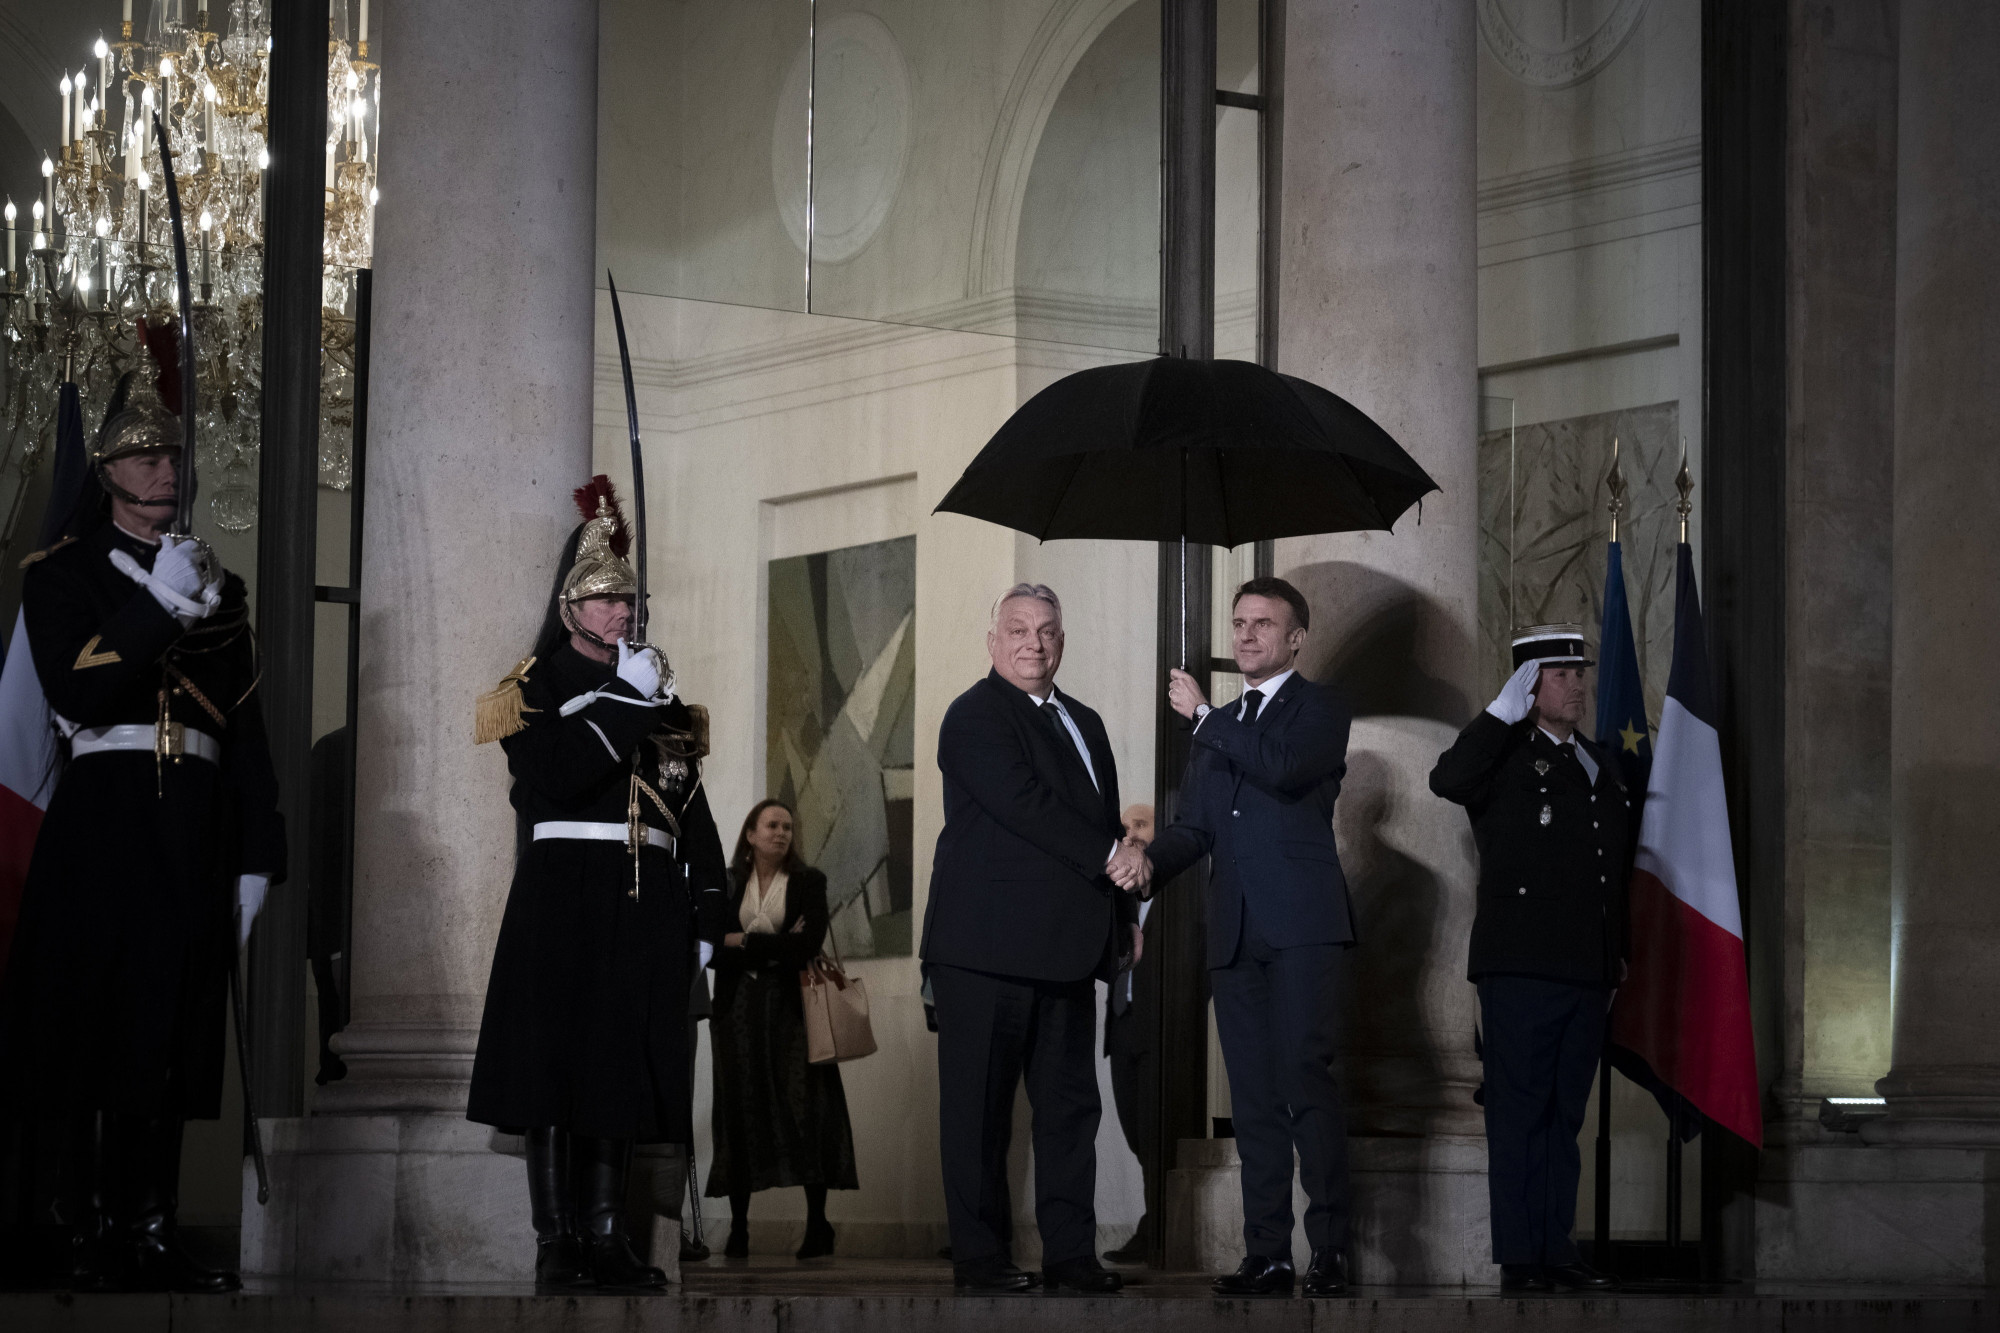 A Miniszterelnöki Sajtóiroda által közreadott képen Emmanuel Macron francia elnök (j) fogadja Orbán Viktor miniszterelnököt párizsi munkavacsorájuk elõtt az Elysée Palotában.